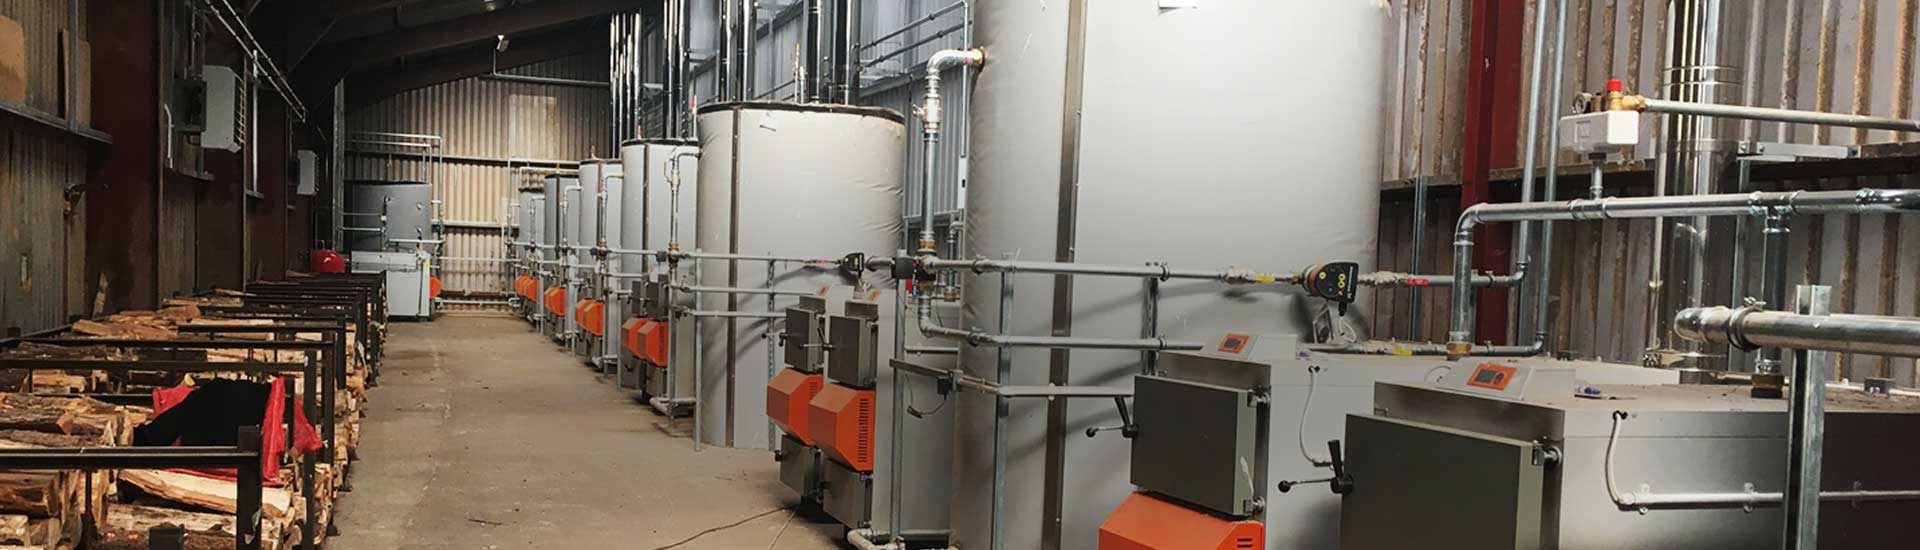 biomass boilers